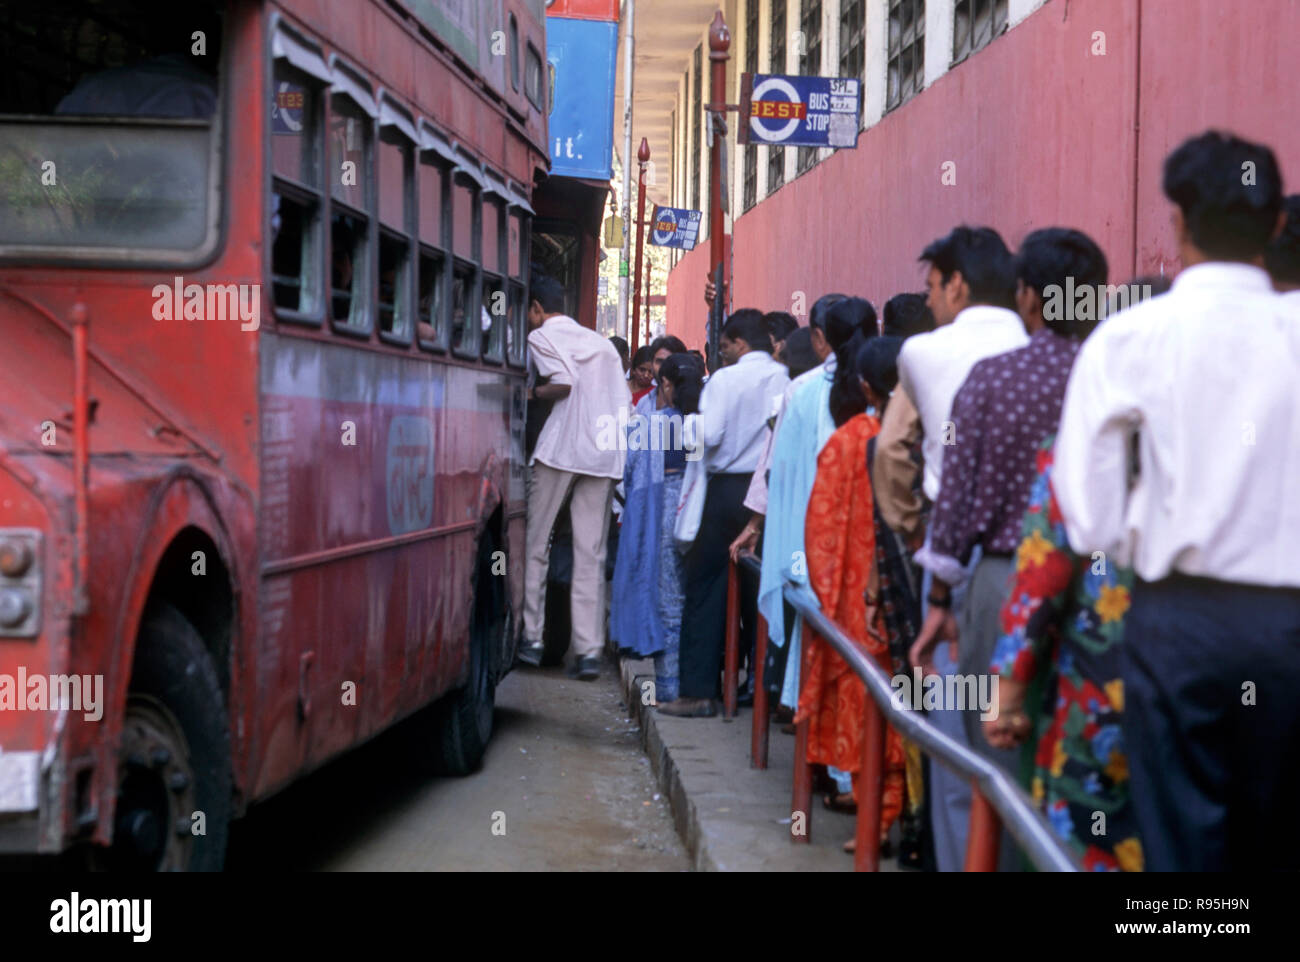 People in queue, Bus Stop, Churchgate, Bombay, Mumbai, Maharashtra, India Stock Photo